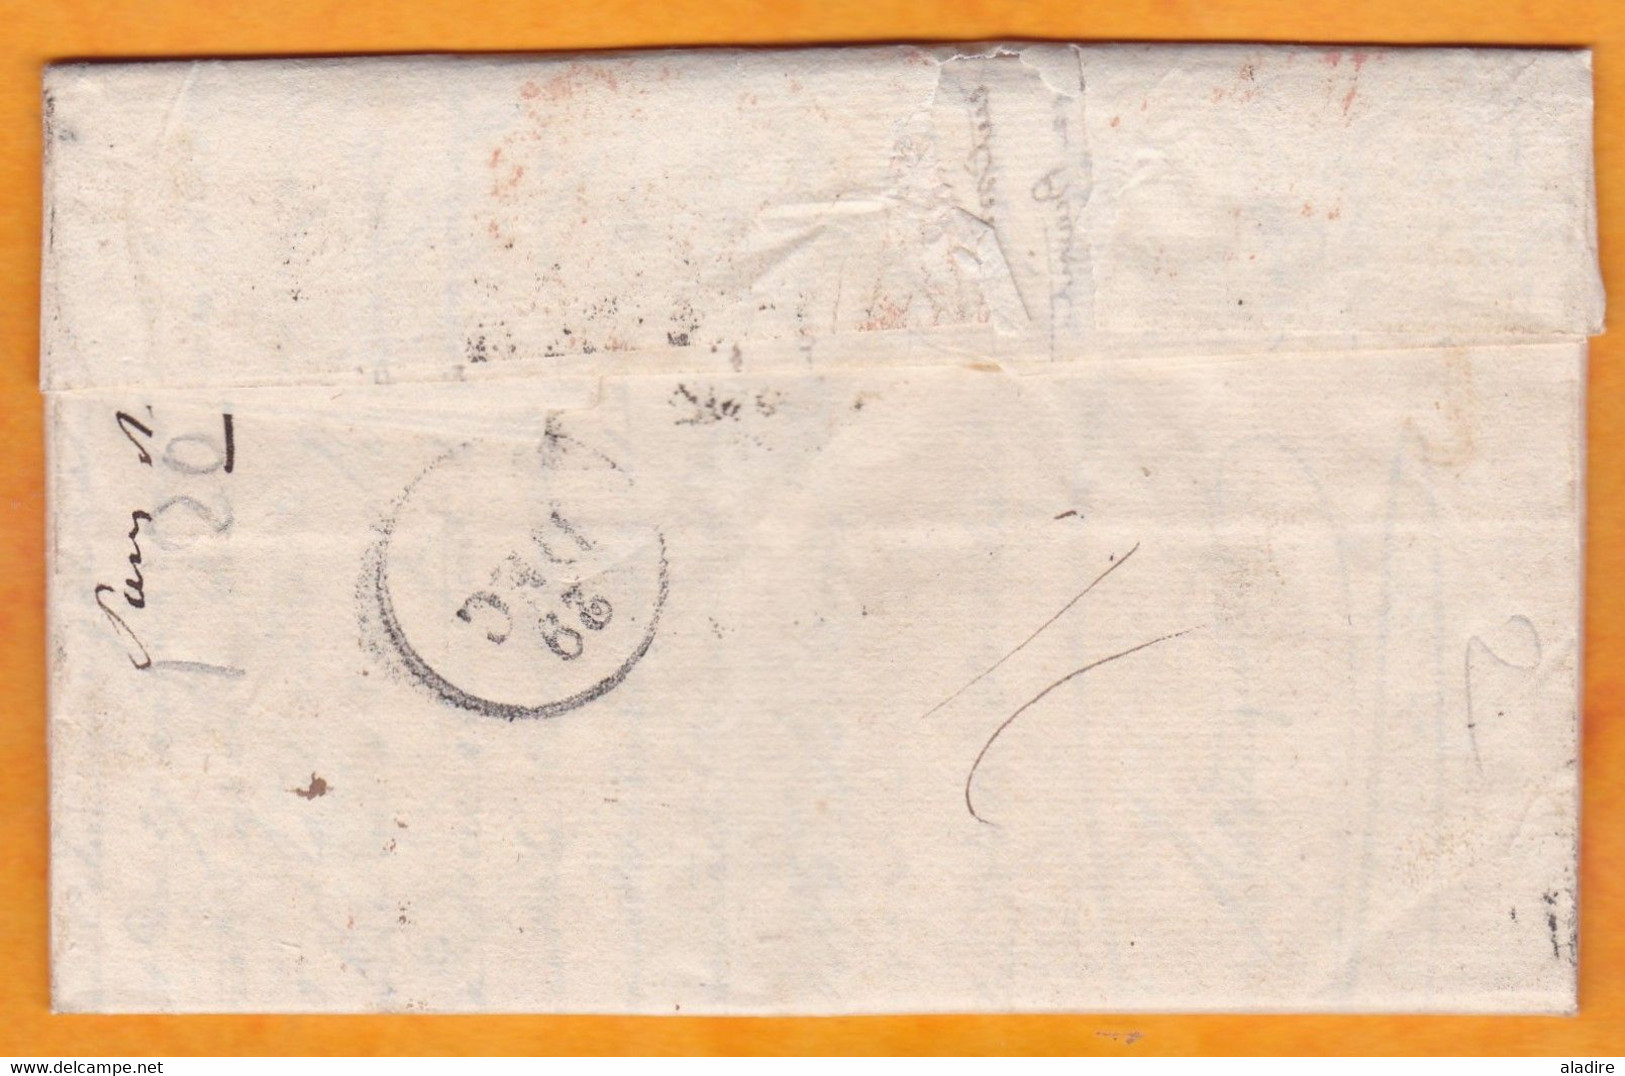 1830 - Lettre pliée avec correspondance en français de 2 pages d' Almeria, Andalucia, Espana vers Marseille, France